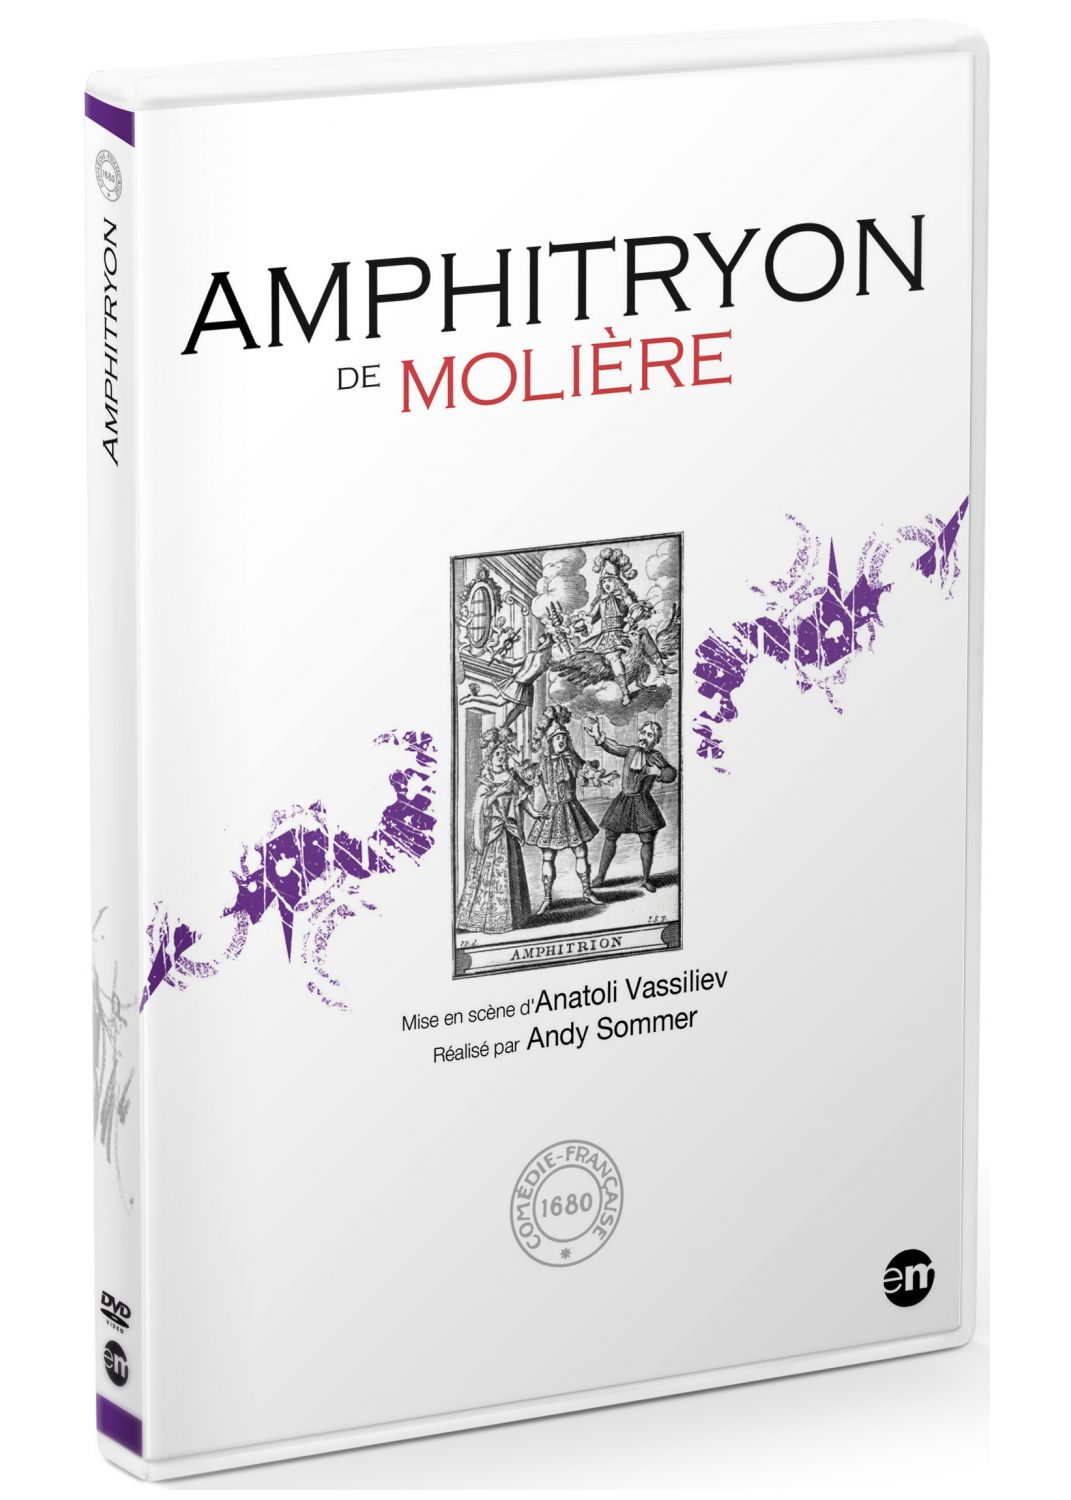 Amphitryon [DVD]